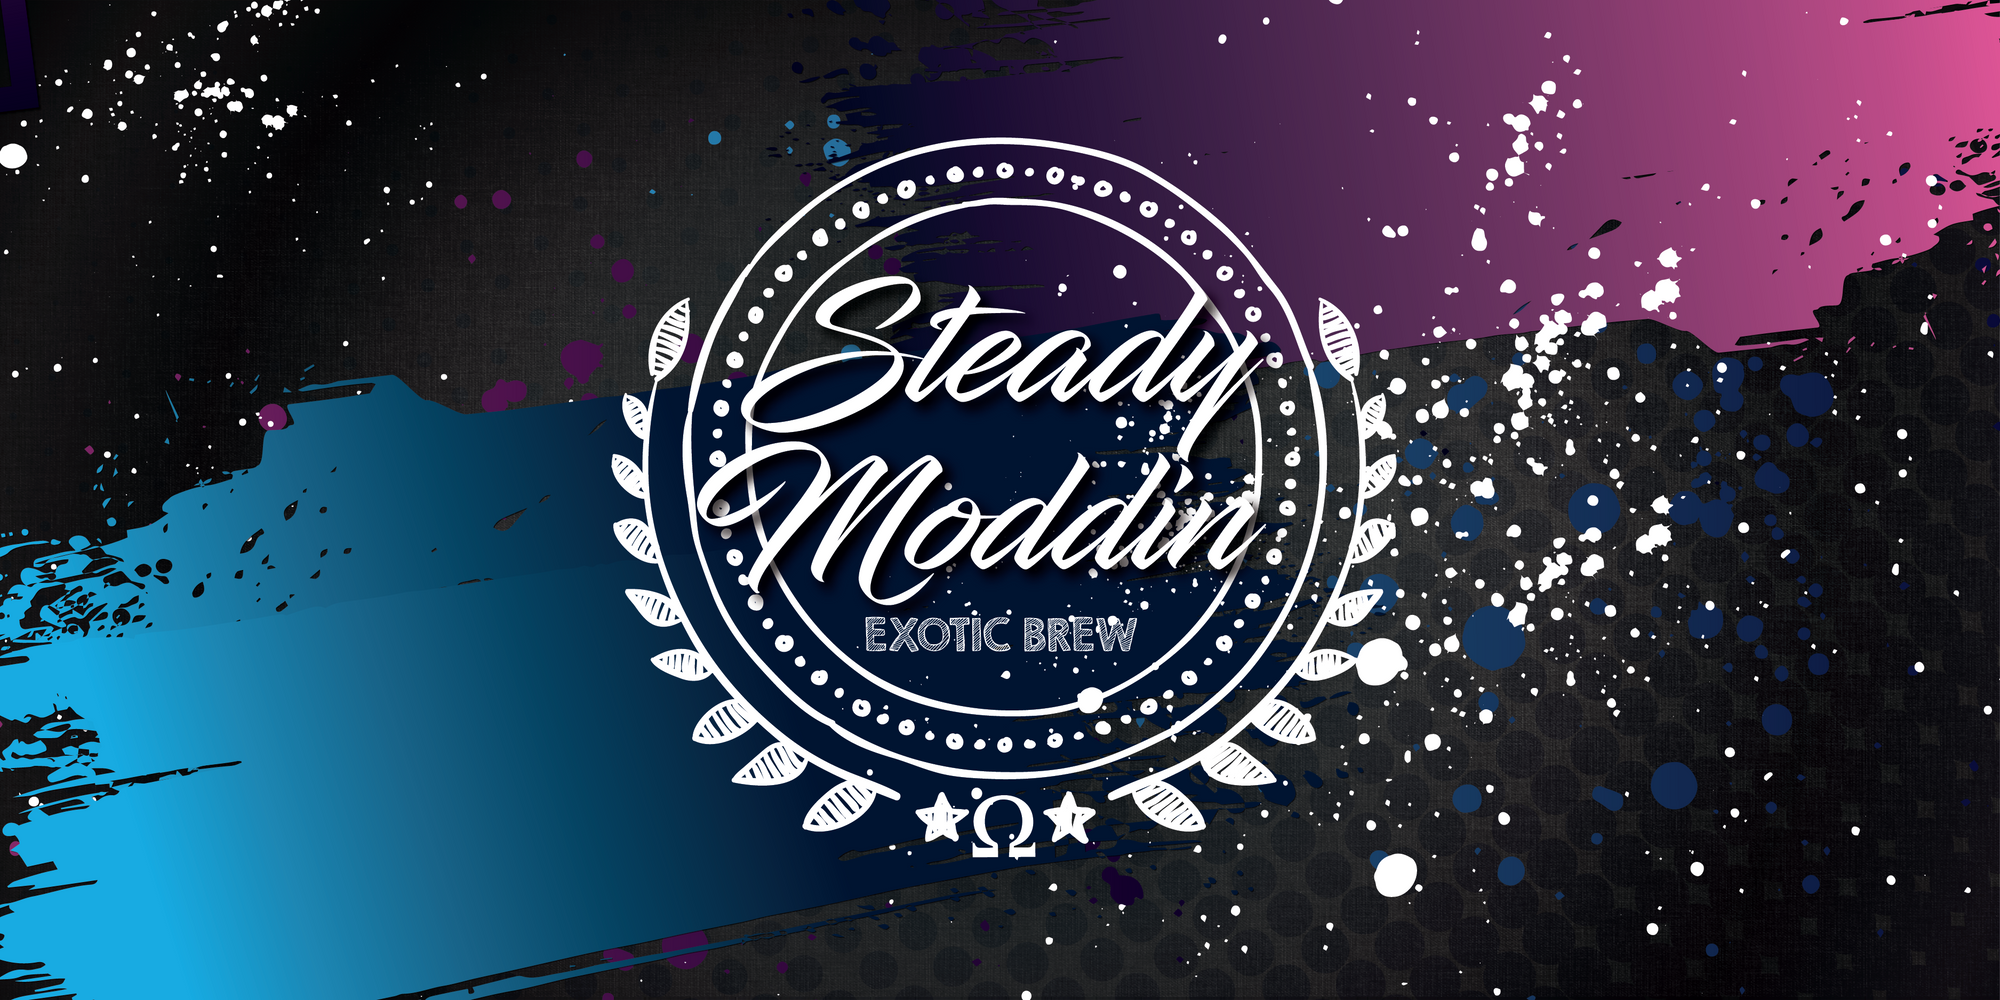 Steady Moddin's Exotic Brew